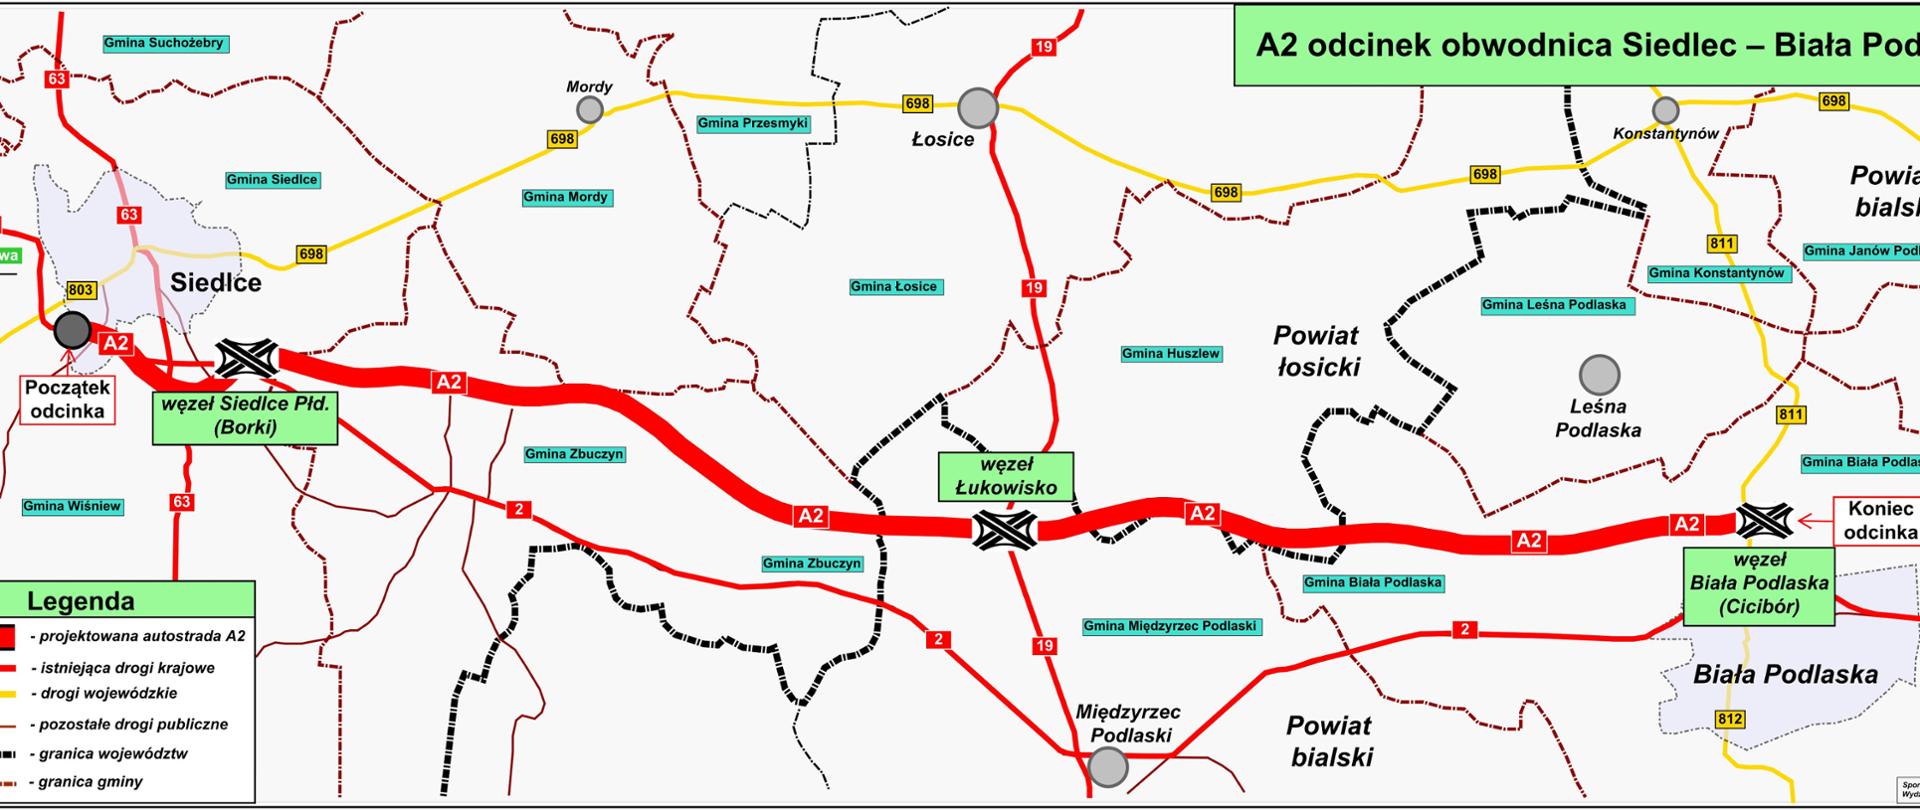 Autostrada A2 Siedlce - Biała Podlaska 